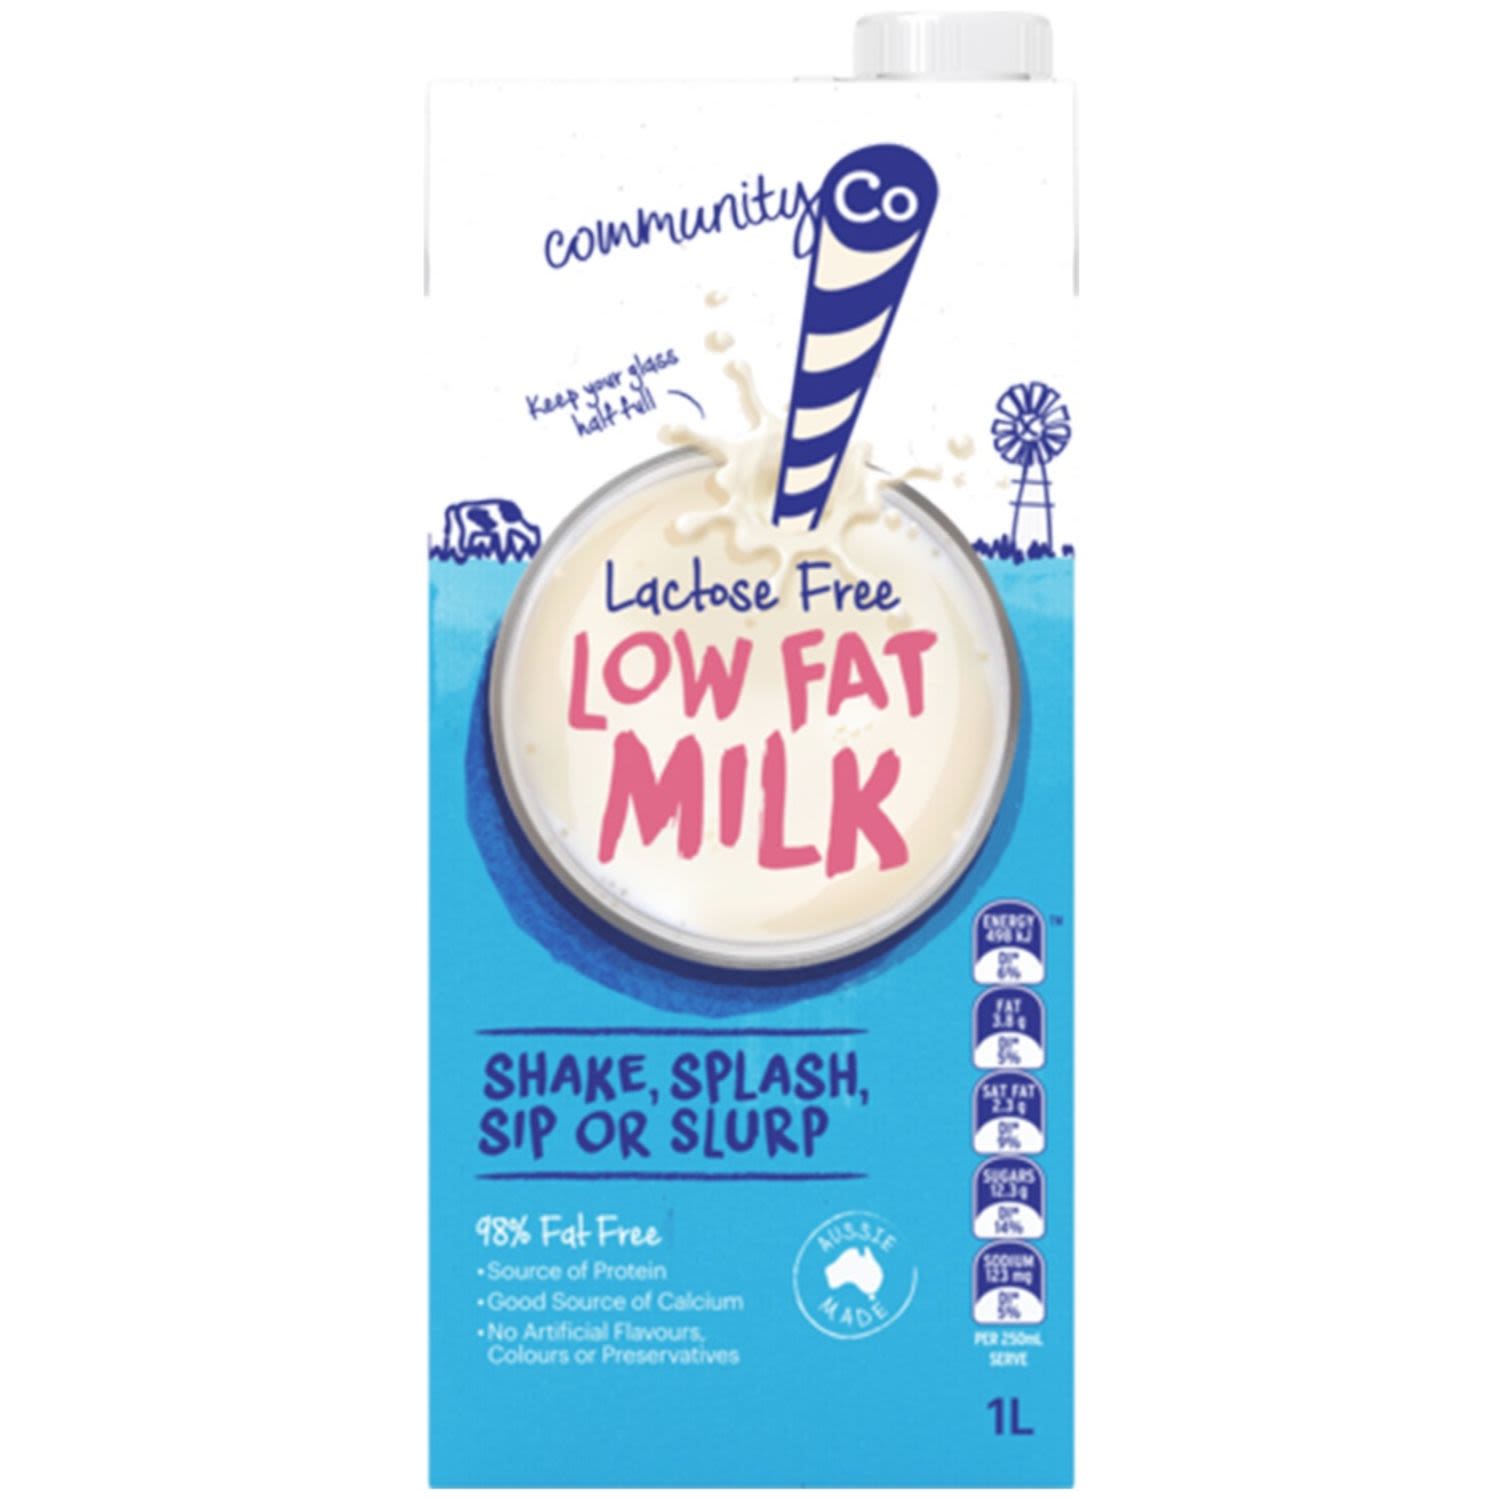 Community Co Lactose Free Low Fat Milk, 1 Litre